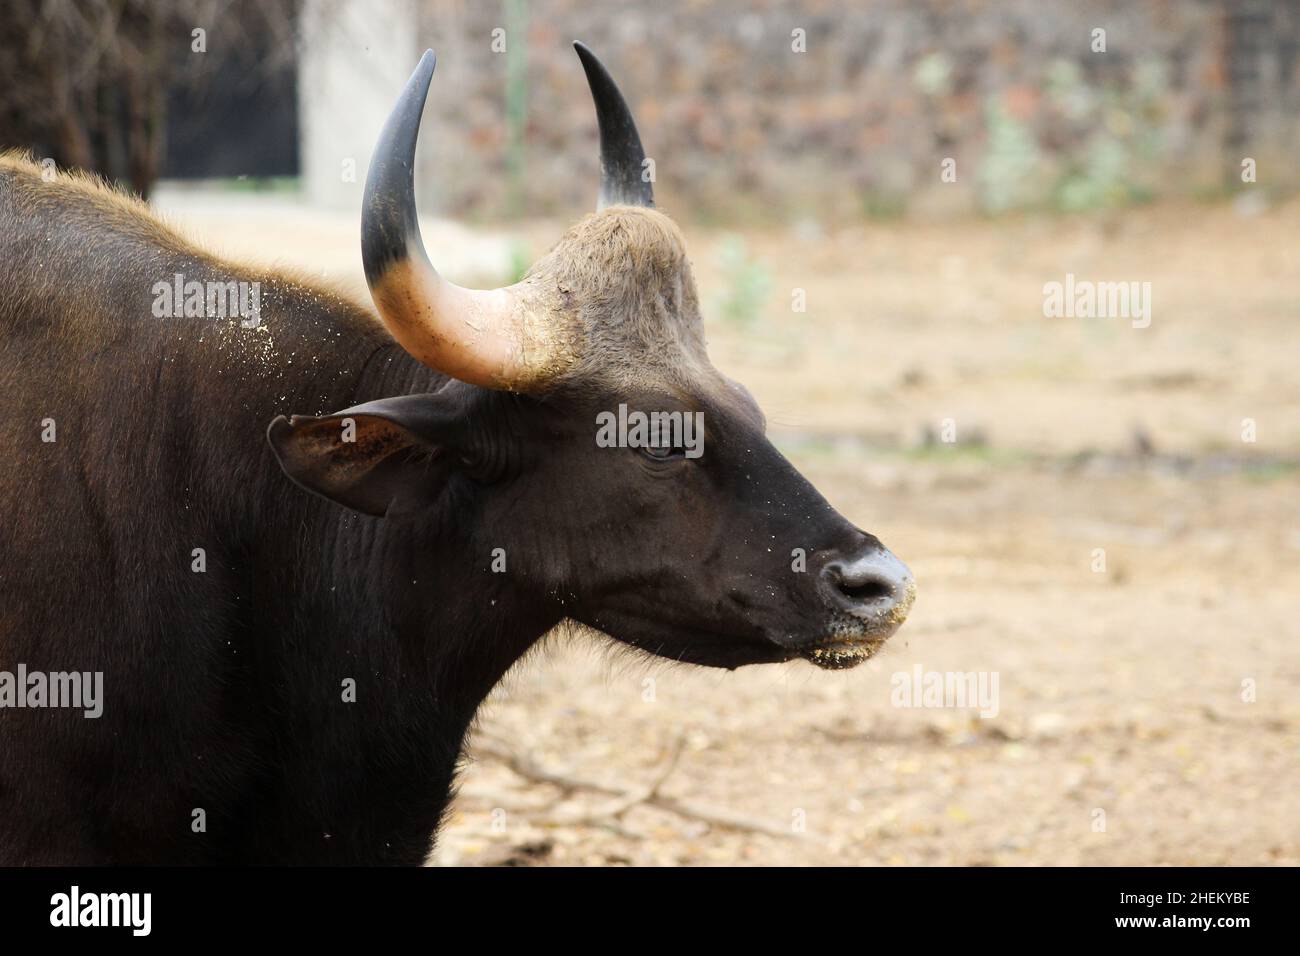 Gaur est également connu sous le nom de bison indien, est un bovin originaire de l'Asie du Sud et du Sud-est et a été classé comme vulnérable Banque D'Images